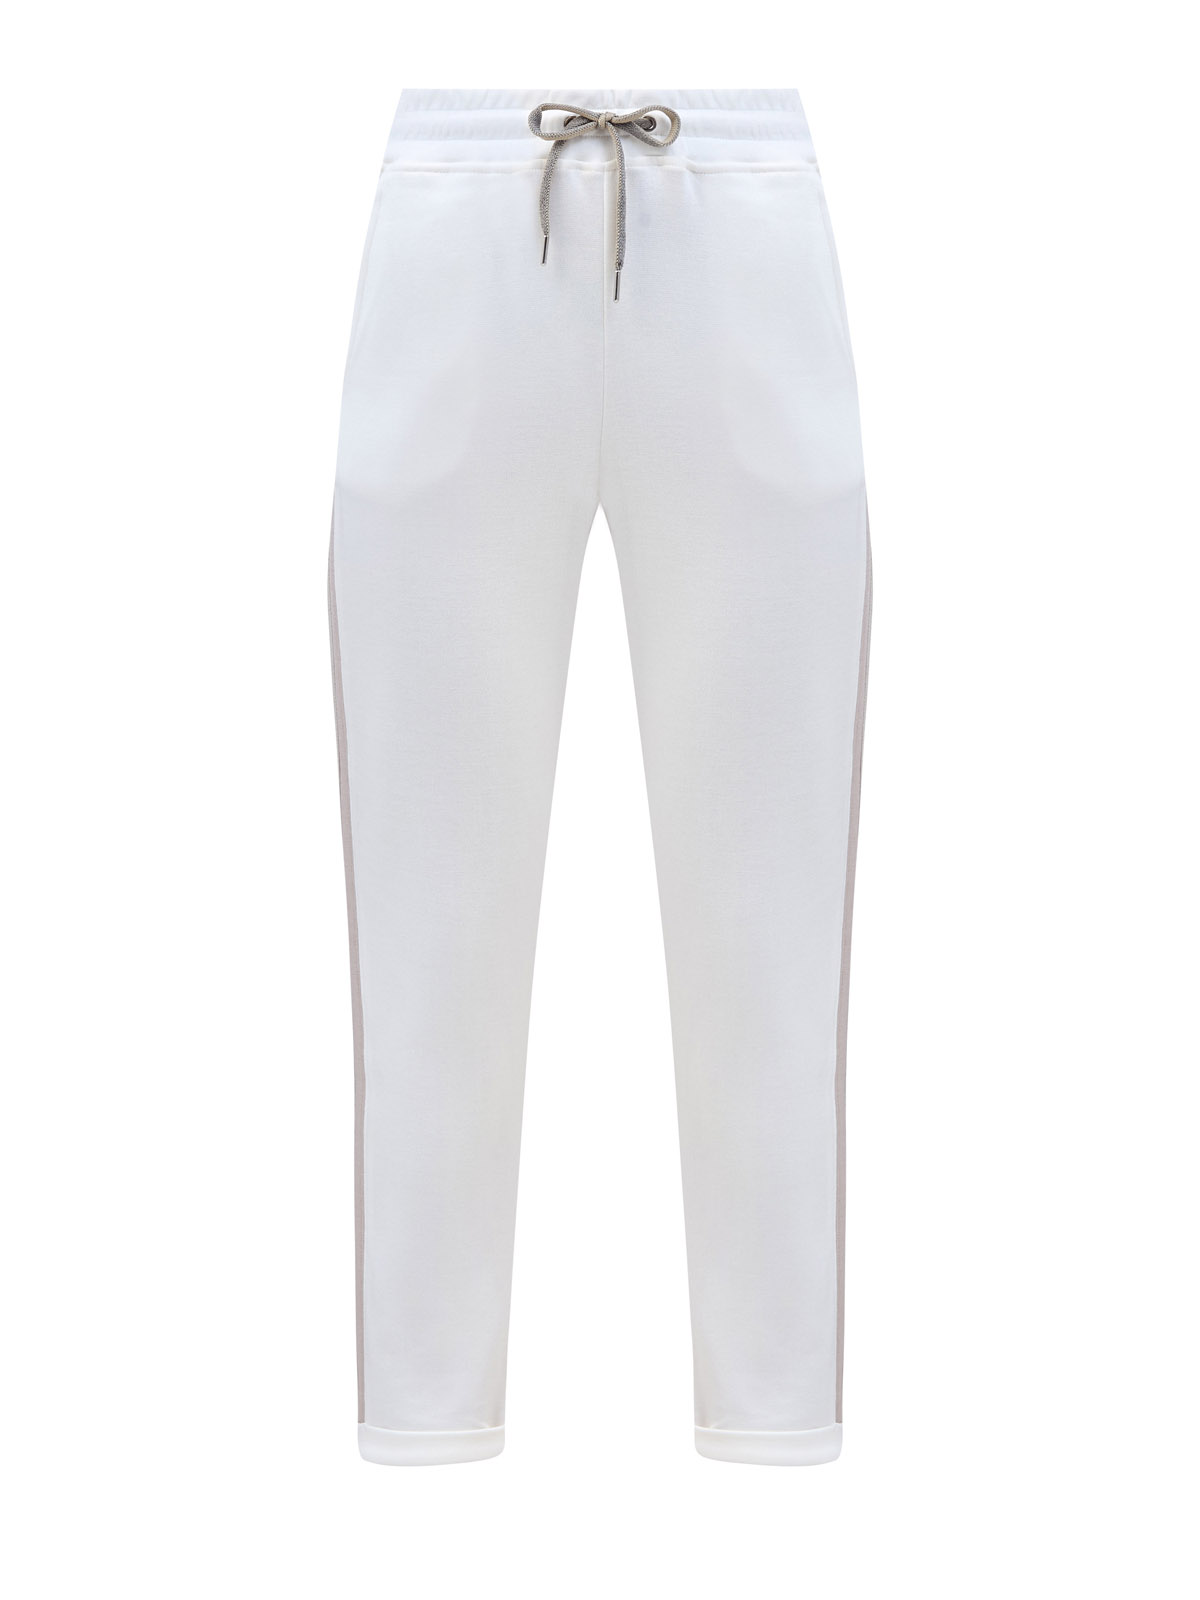 Хлопковые брюки в спортивном стиле с лампасами и поясом на кулиске ELEVENTY, цвет белый, размер 38;40;44